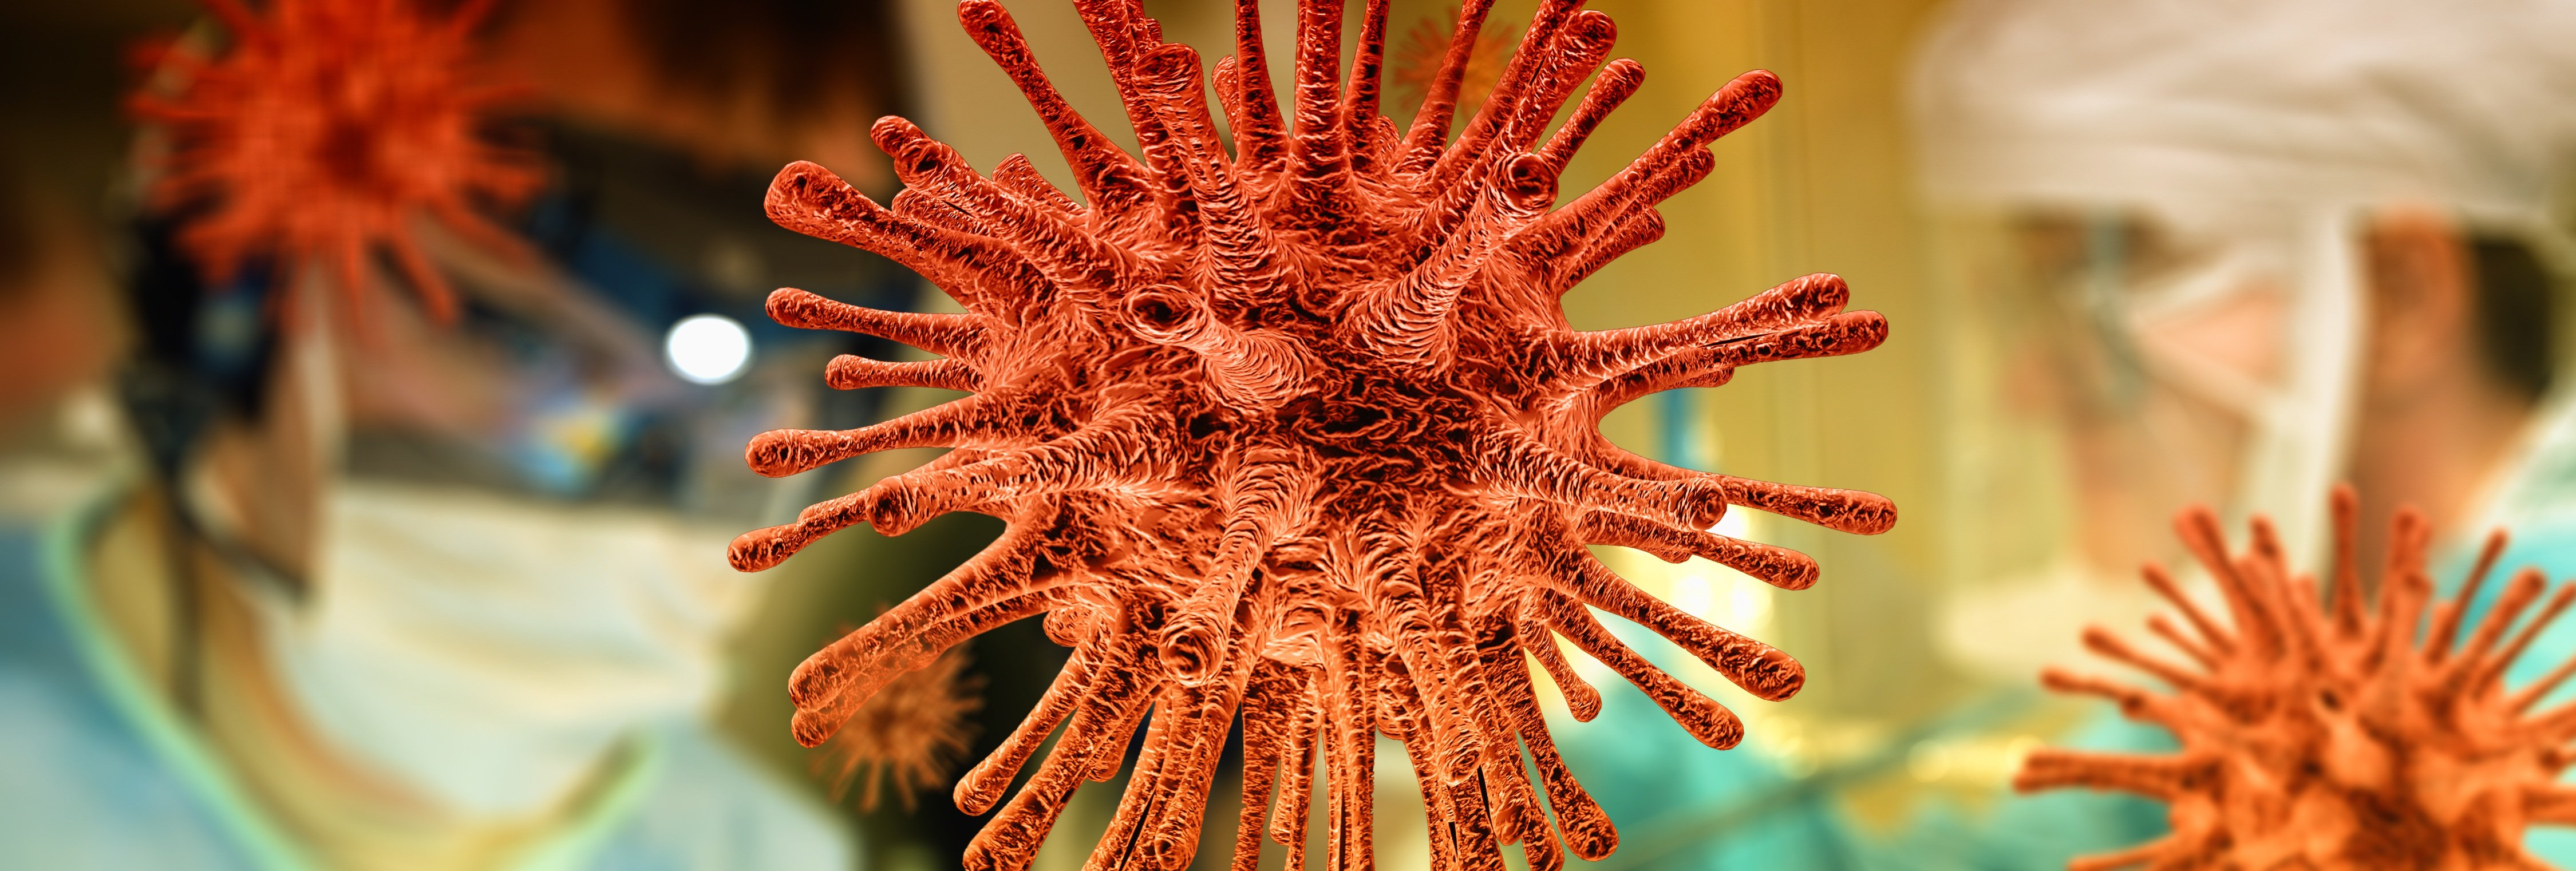 ¿Detendrán las temperaturas altas la expansión del coronavirus?